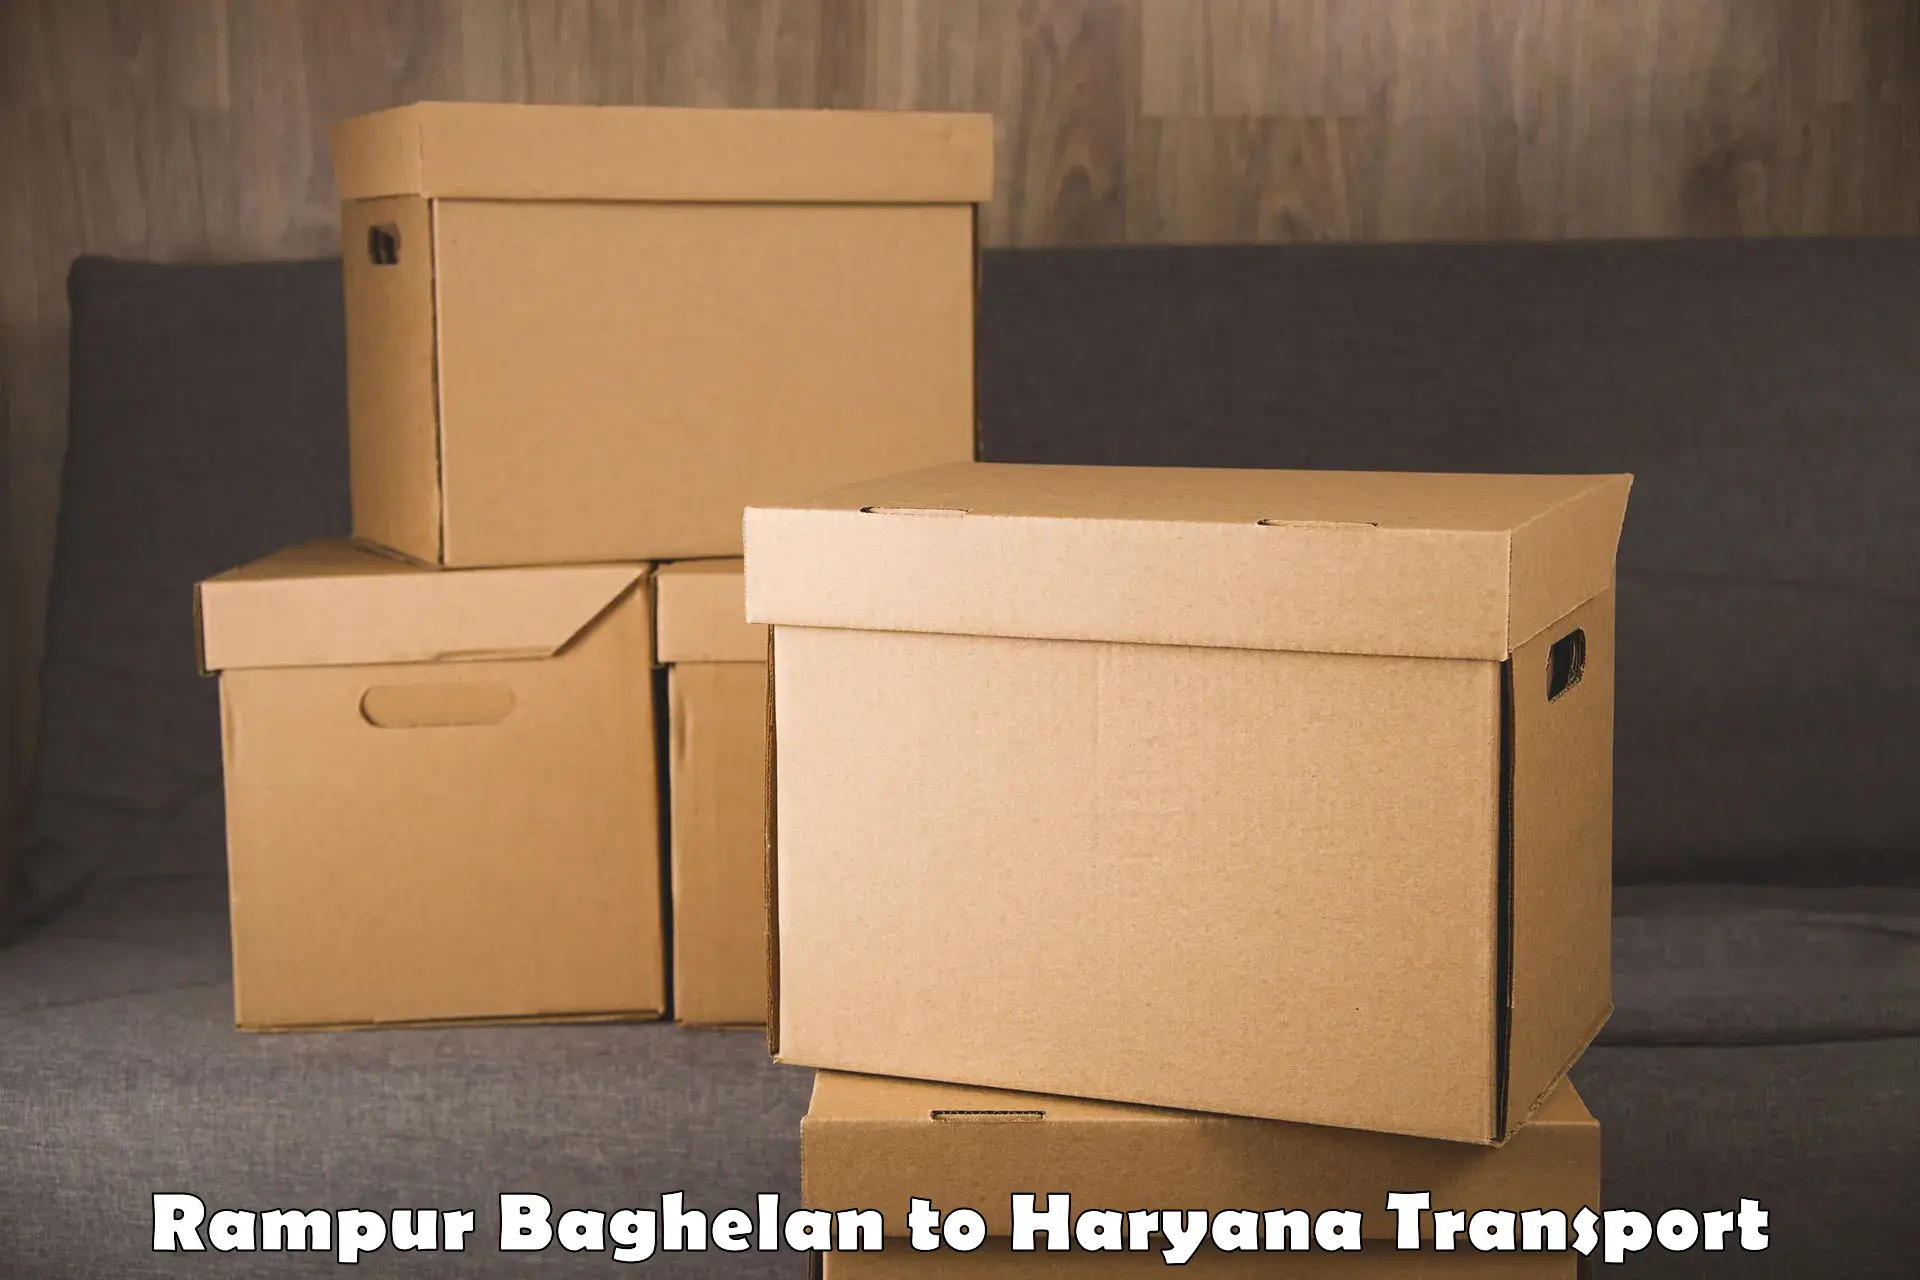 Lorry transport service Rampur Baghelan to Naraingarh